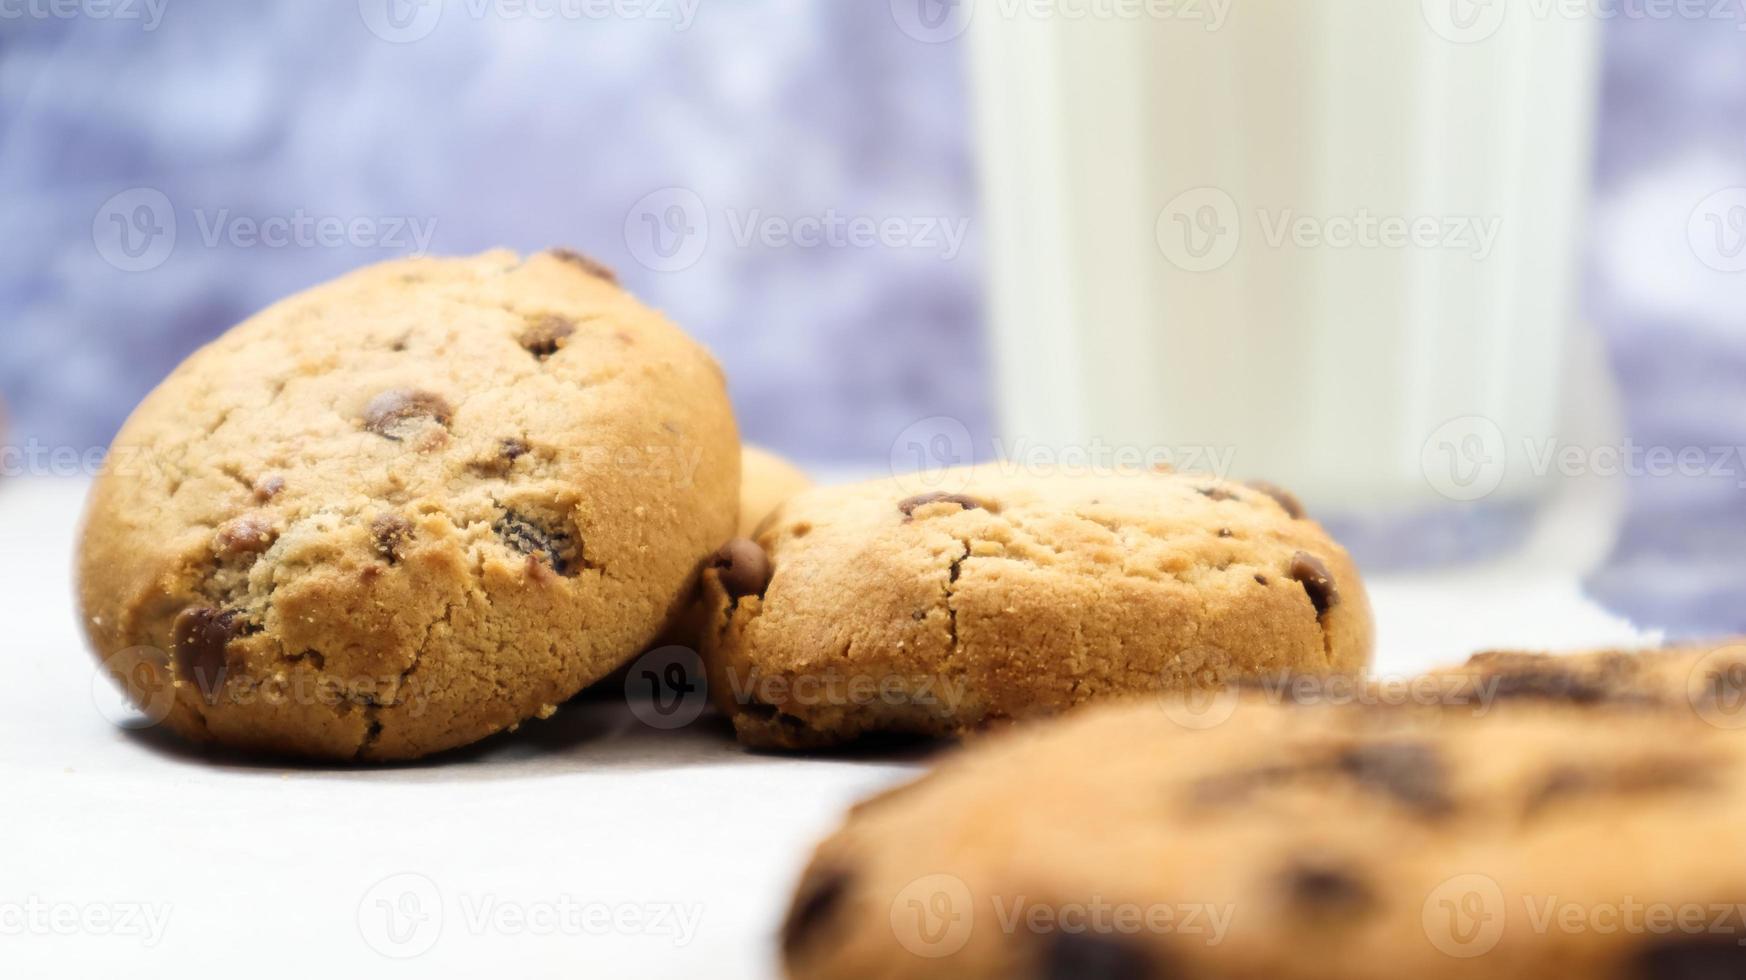 biscoitos de chocolate sem glúten americano com copo de leite vegetal em fundo cinza. biscoitos de chocolate. bolos doces, sobremesa. fundo culinário. foto